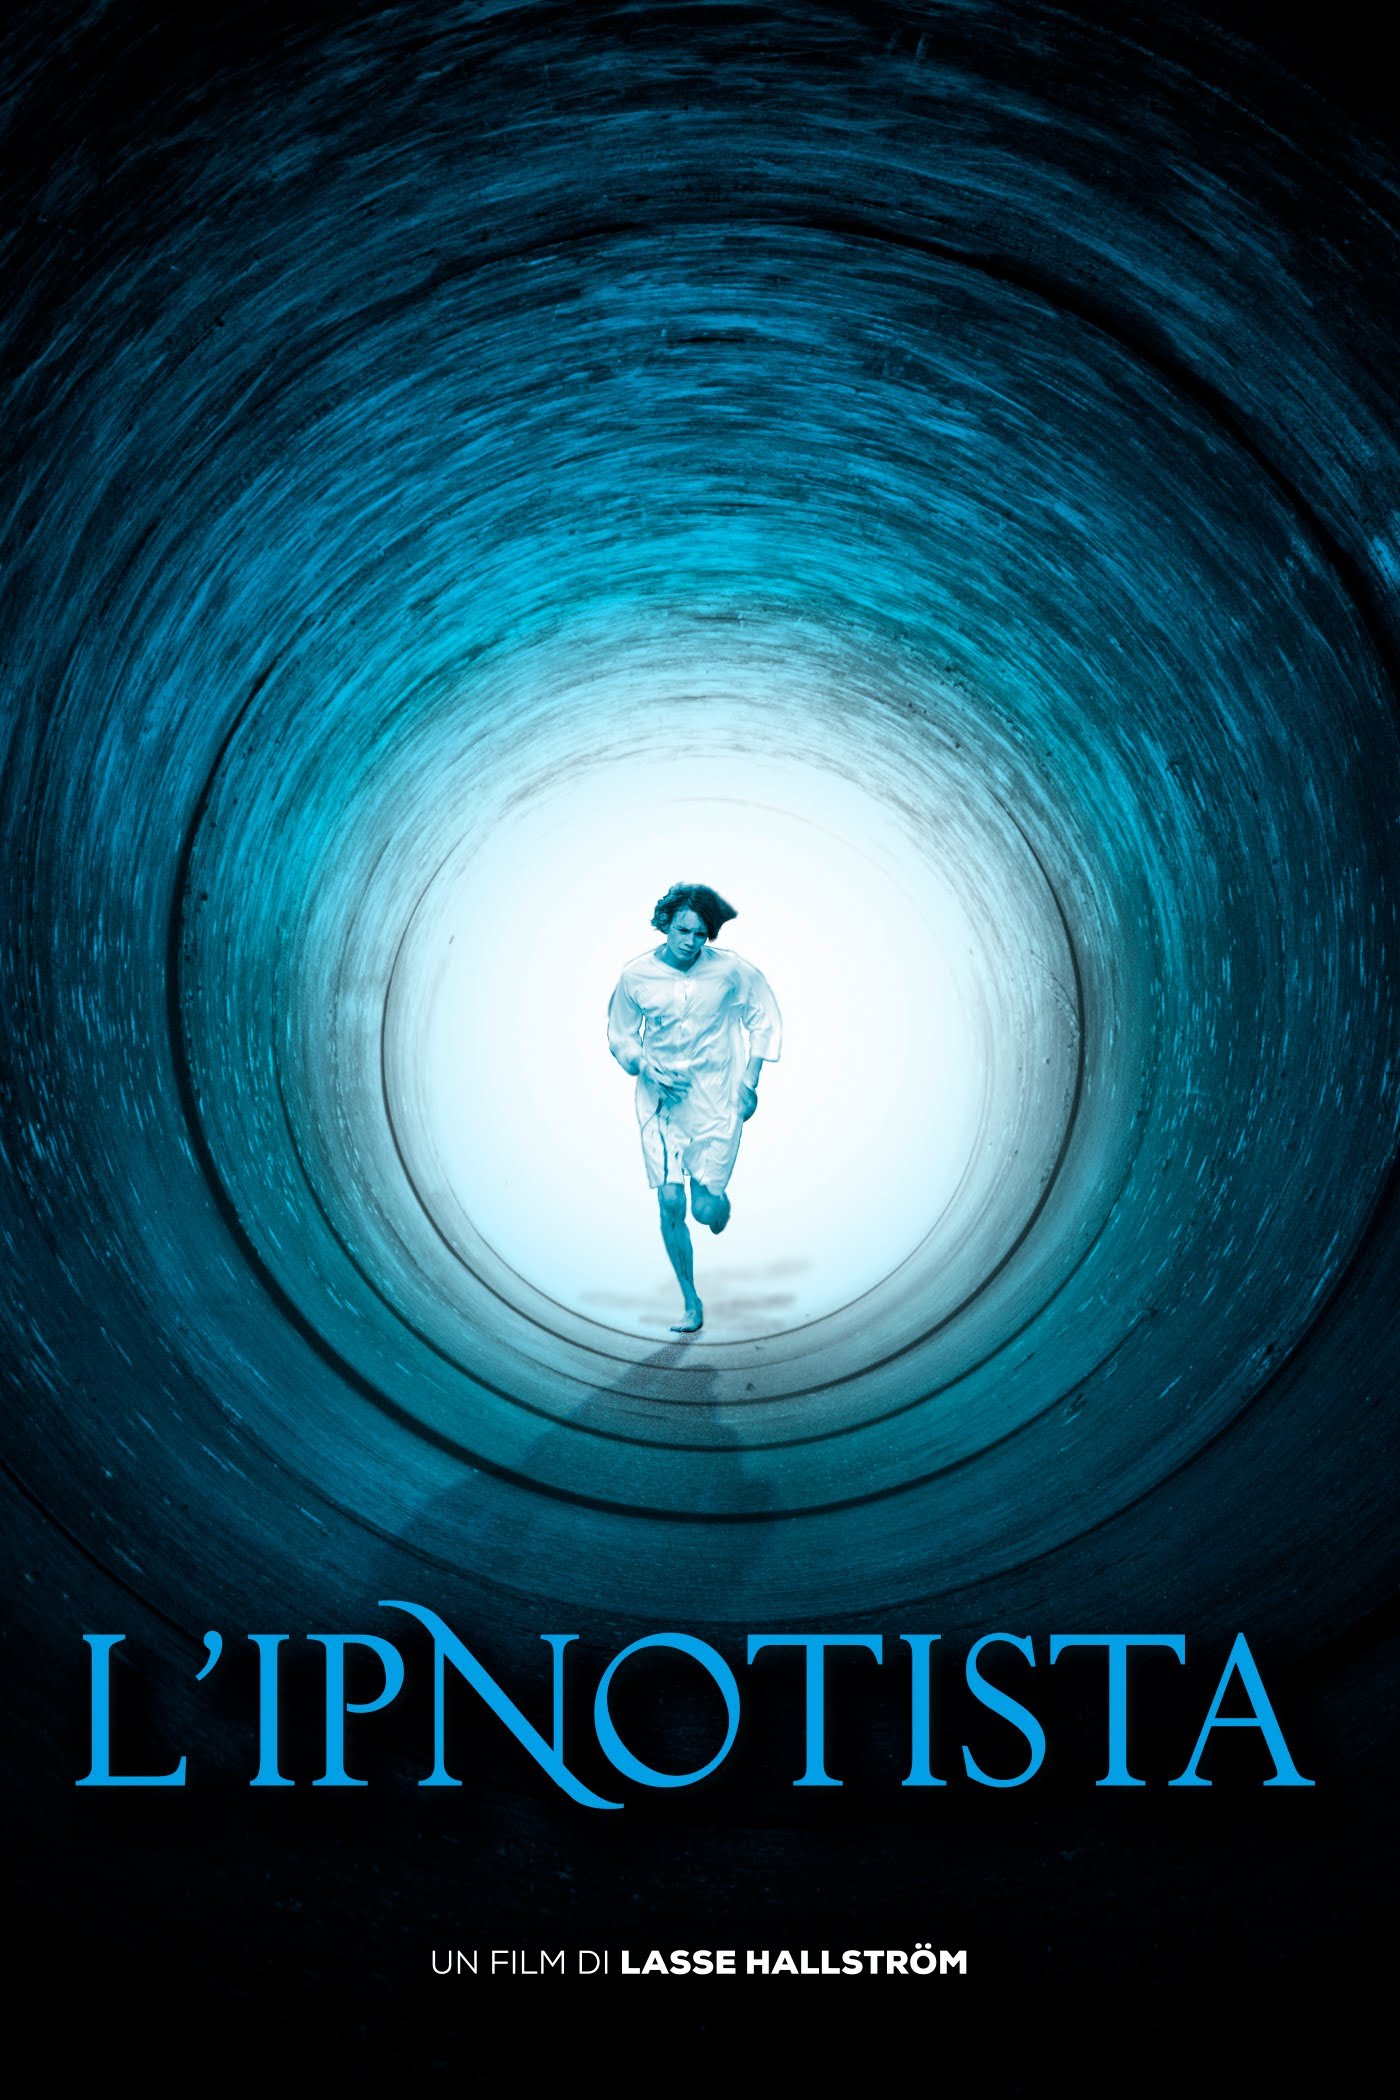 L’ipnotista [HD] (2013)